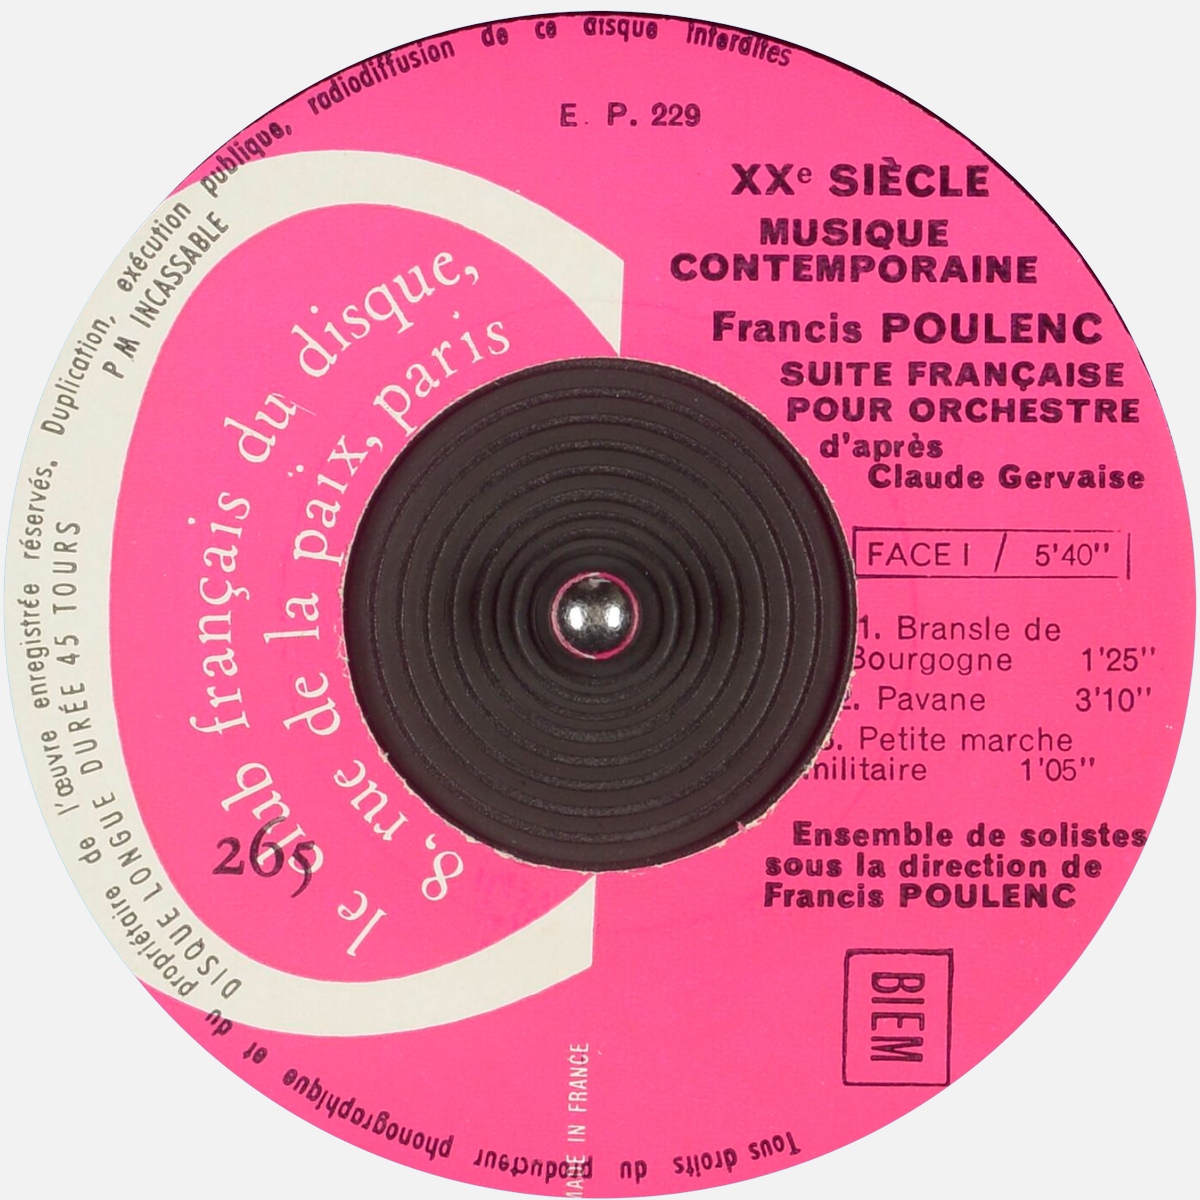 Étiquette recto, Club Français du disque 265 EP 229